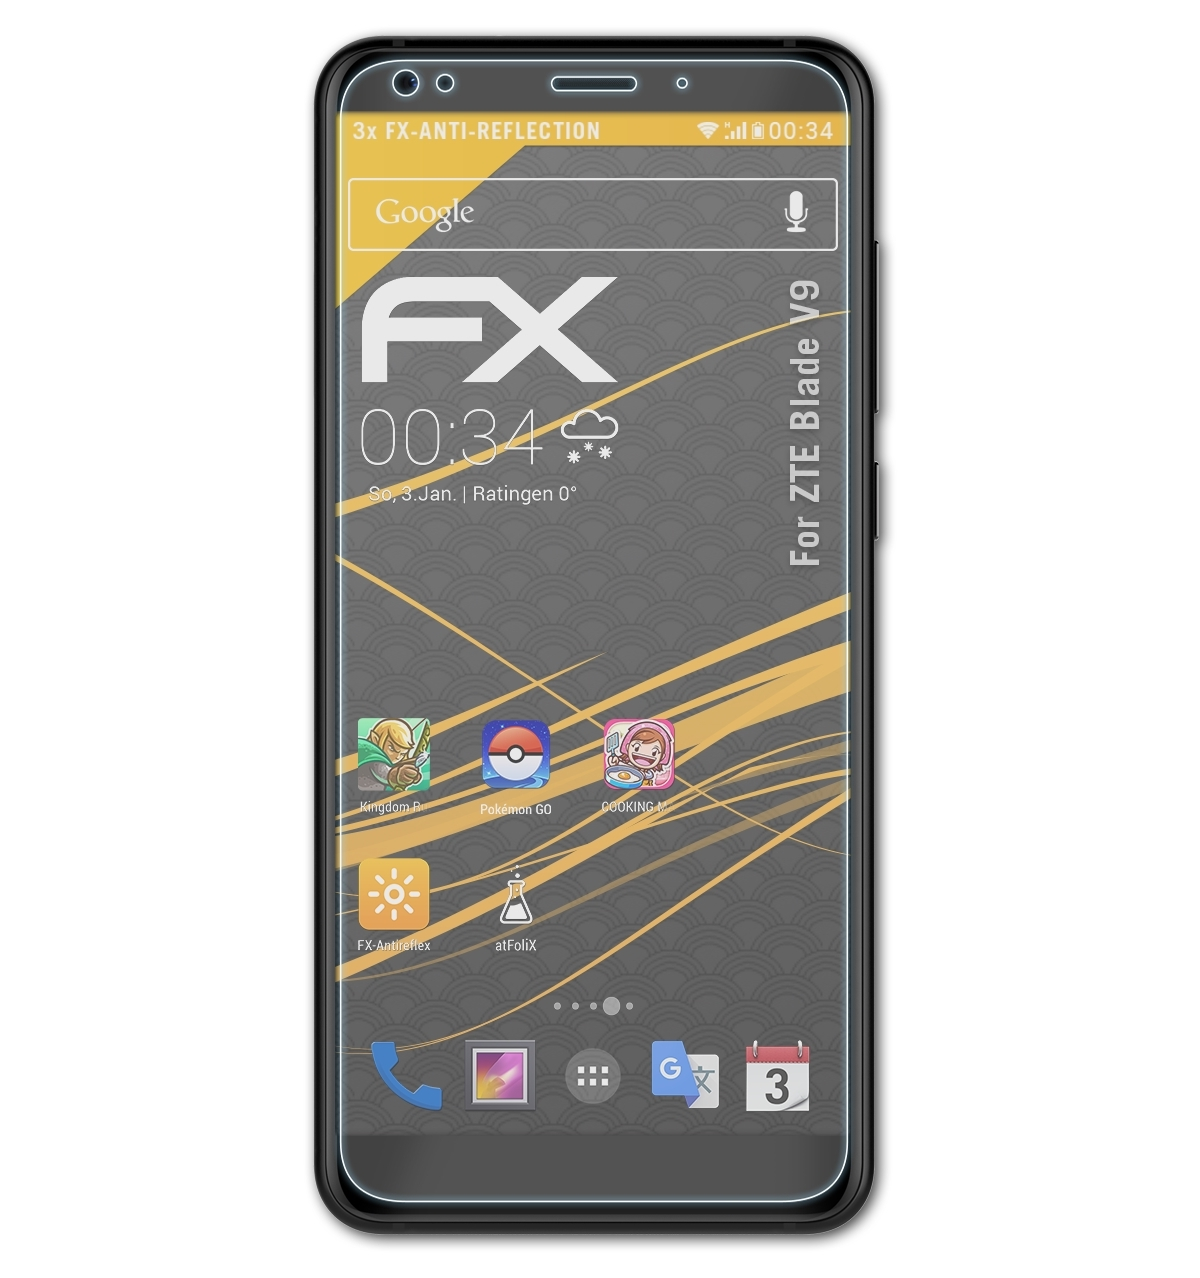 ZTE FX-Antireflex 3x Displayschutz(für ATFOLIX V9) Blade